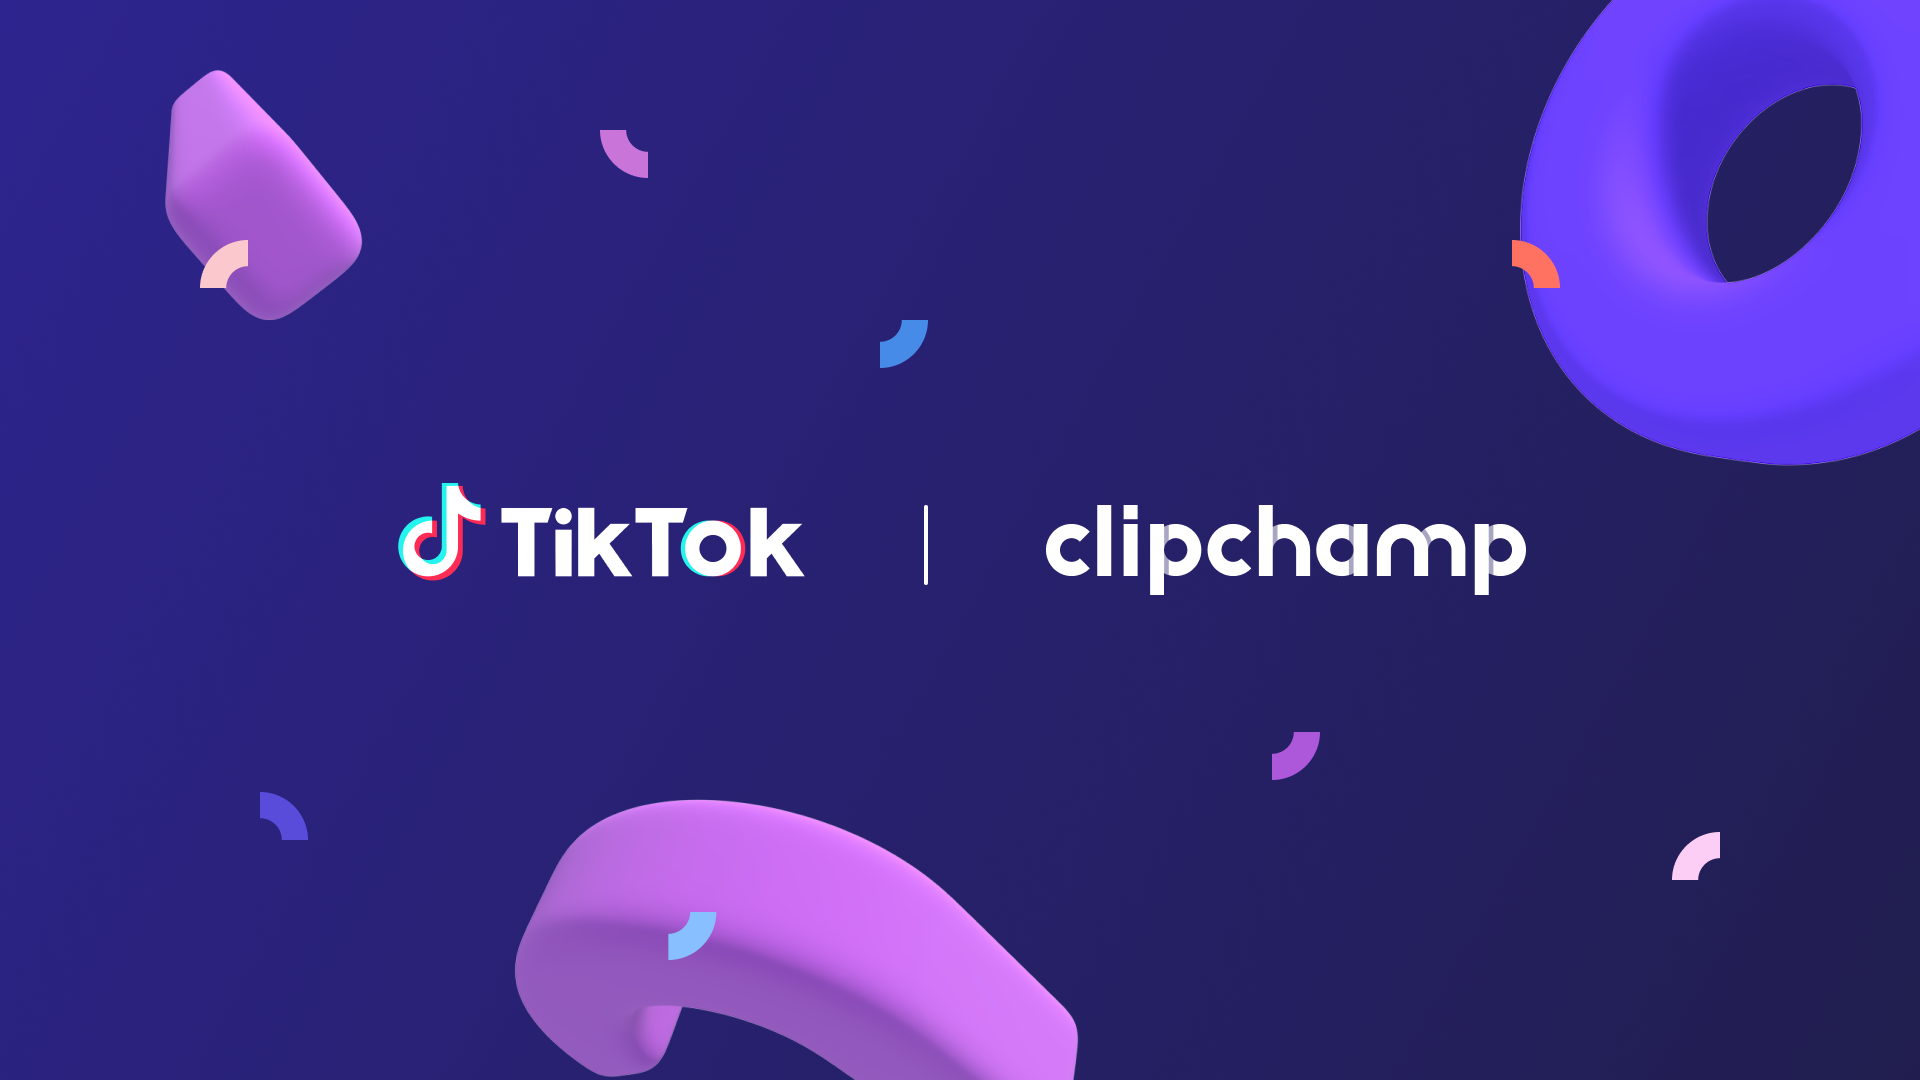 TikTokとClipchampのロゴ。